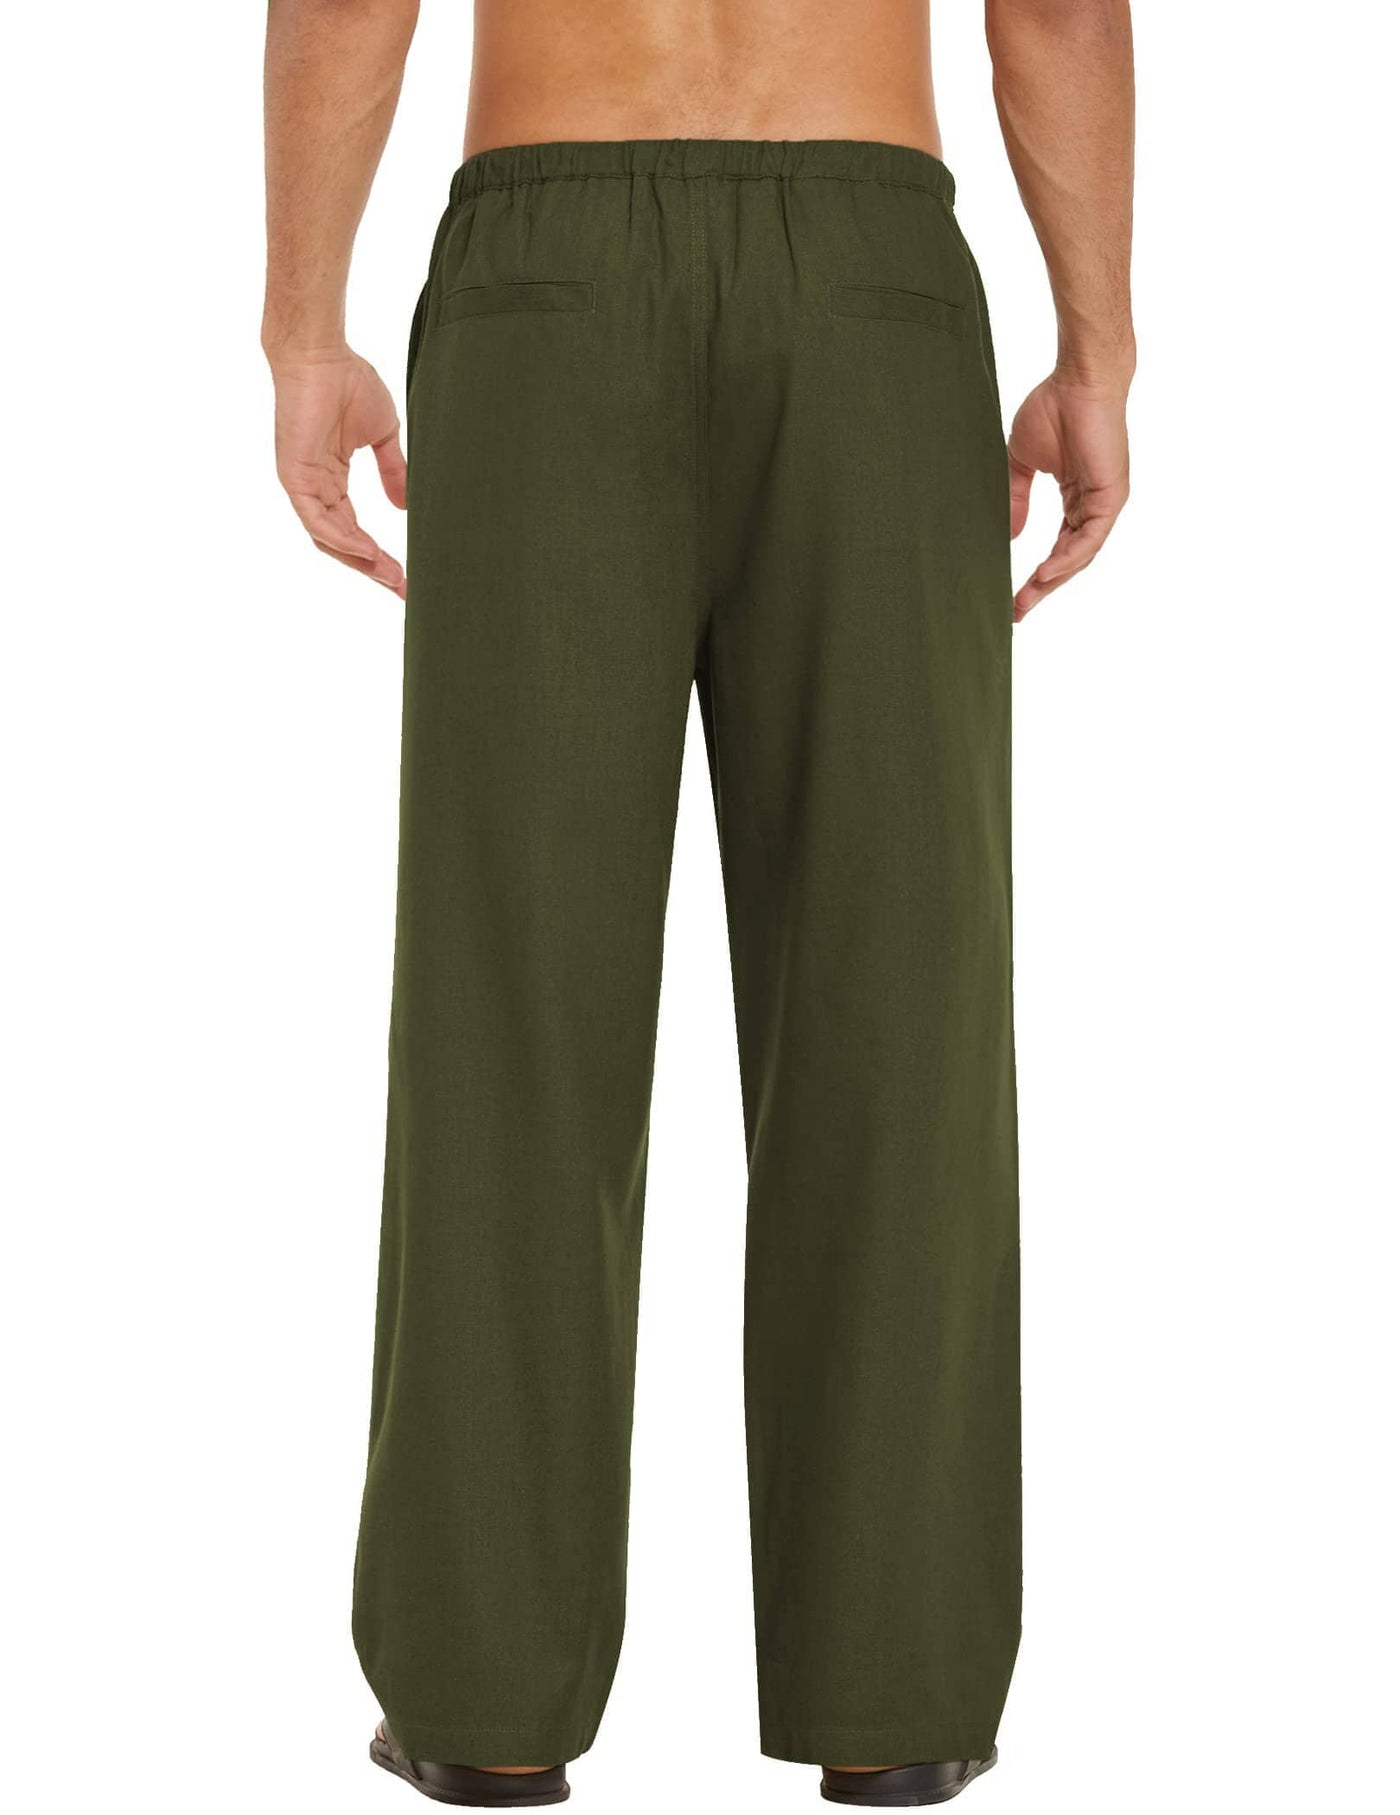 Coofandy Linen Style Loose Waist Yoga Pants (US Only) Pants coofandy 